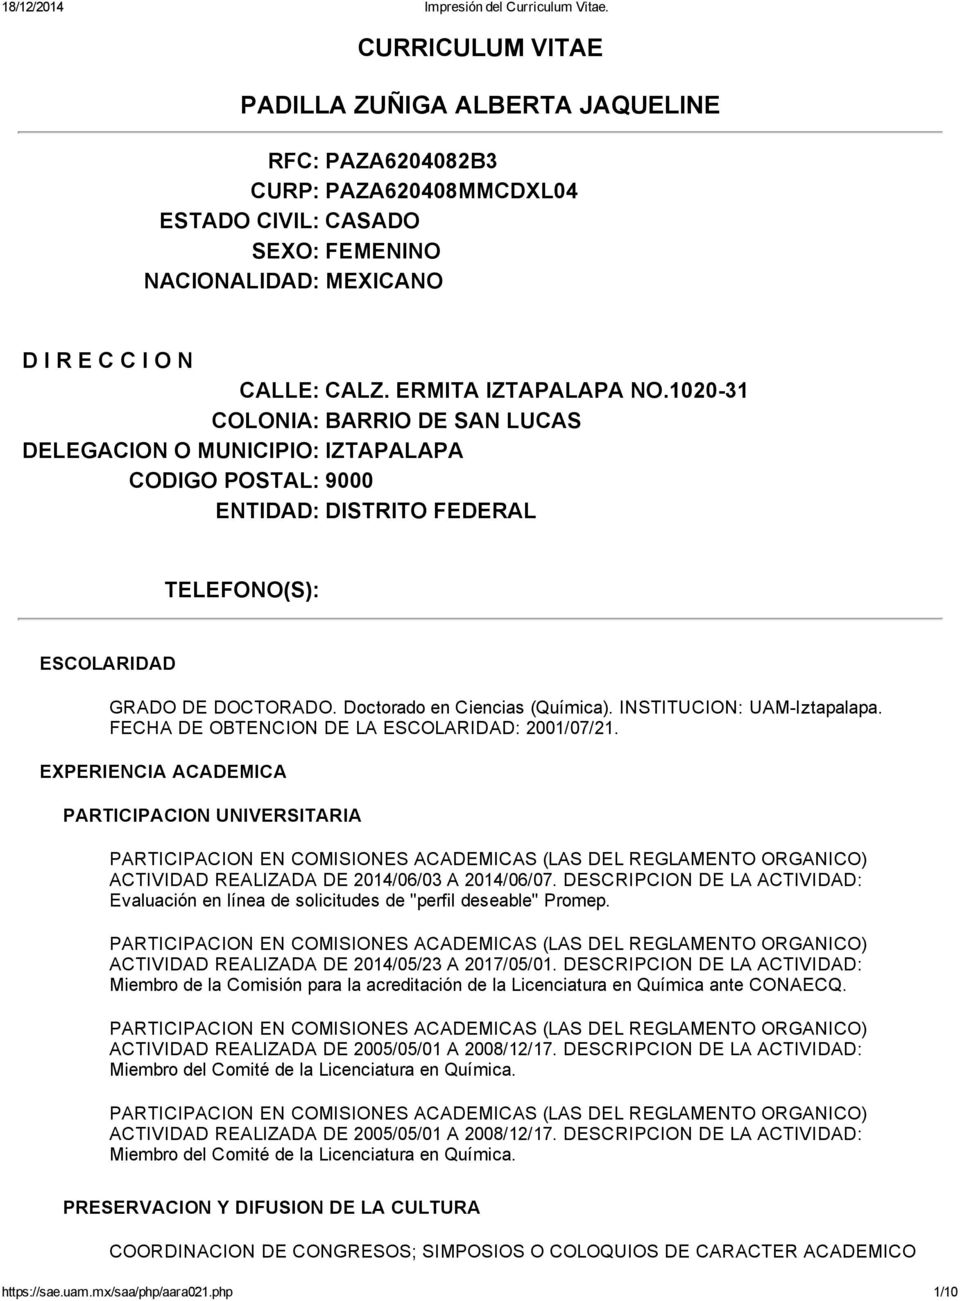 Doctorado en Ciencias (Química). INSTITUCION: UAM Iztapalapa. FECHA DE OBTENCION DE LA ESCOLARIDAD: 2001/07/21.